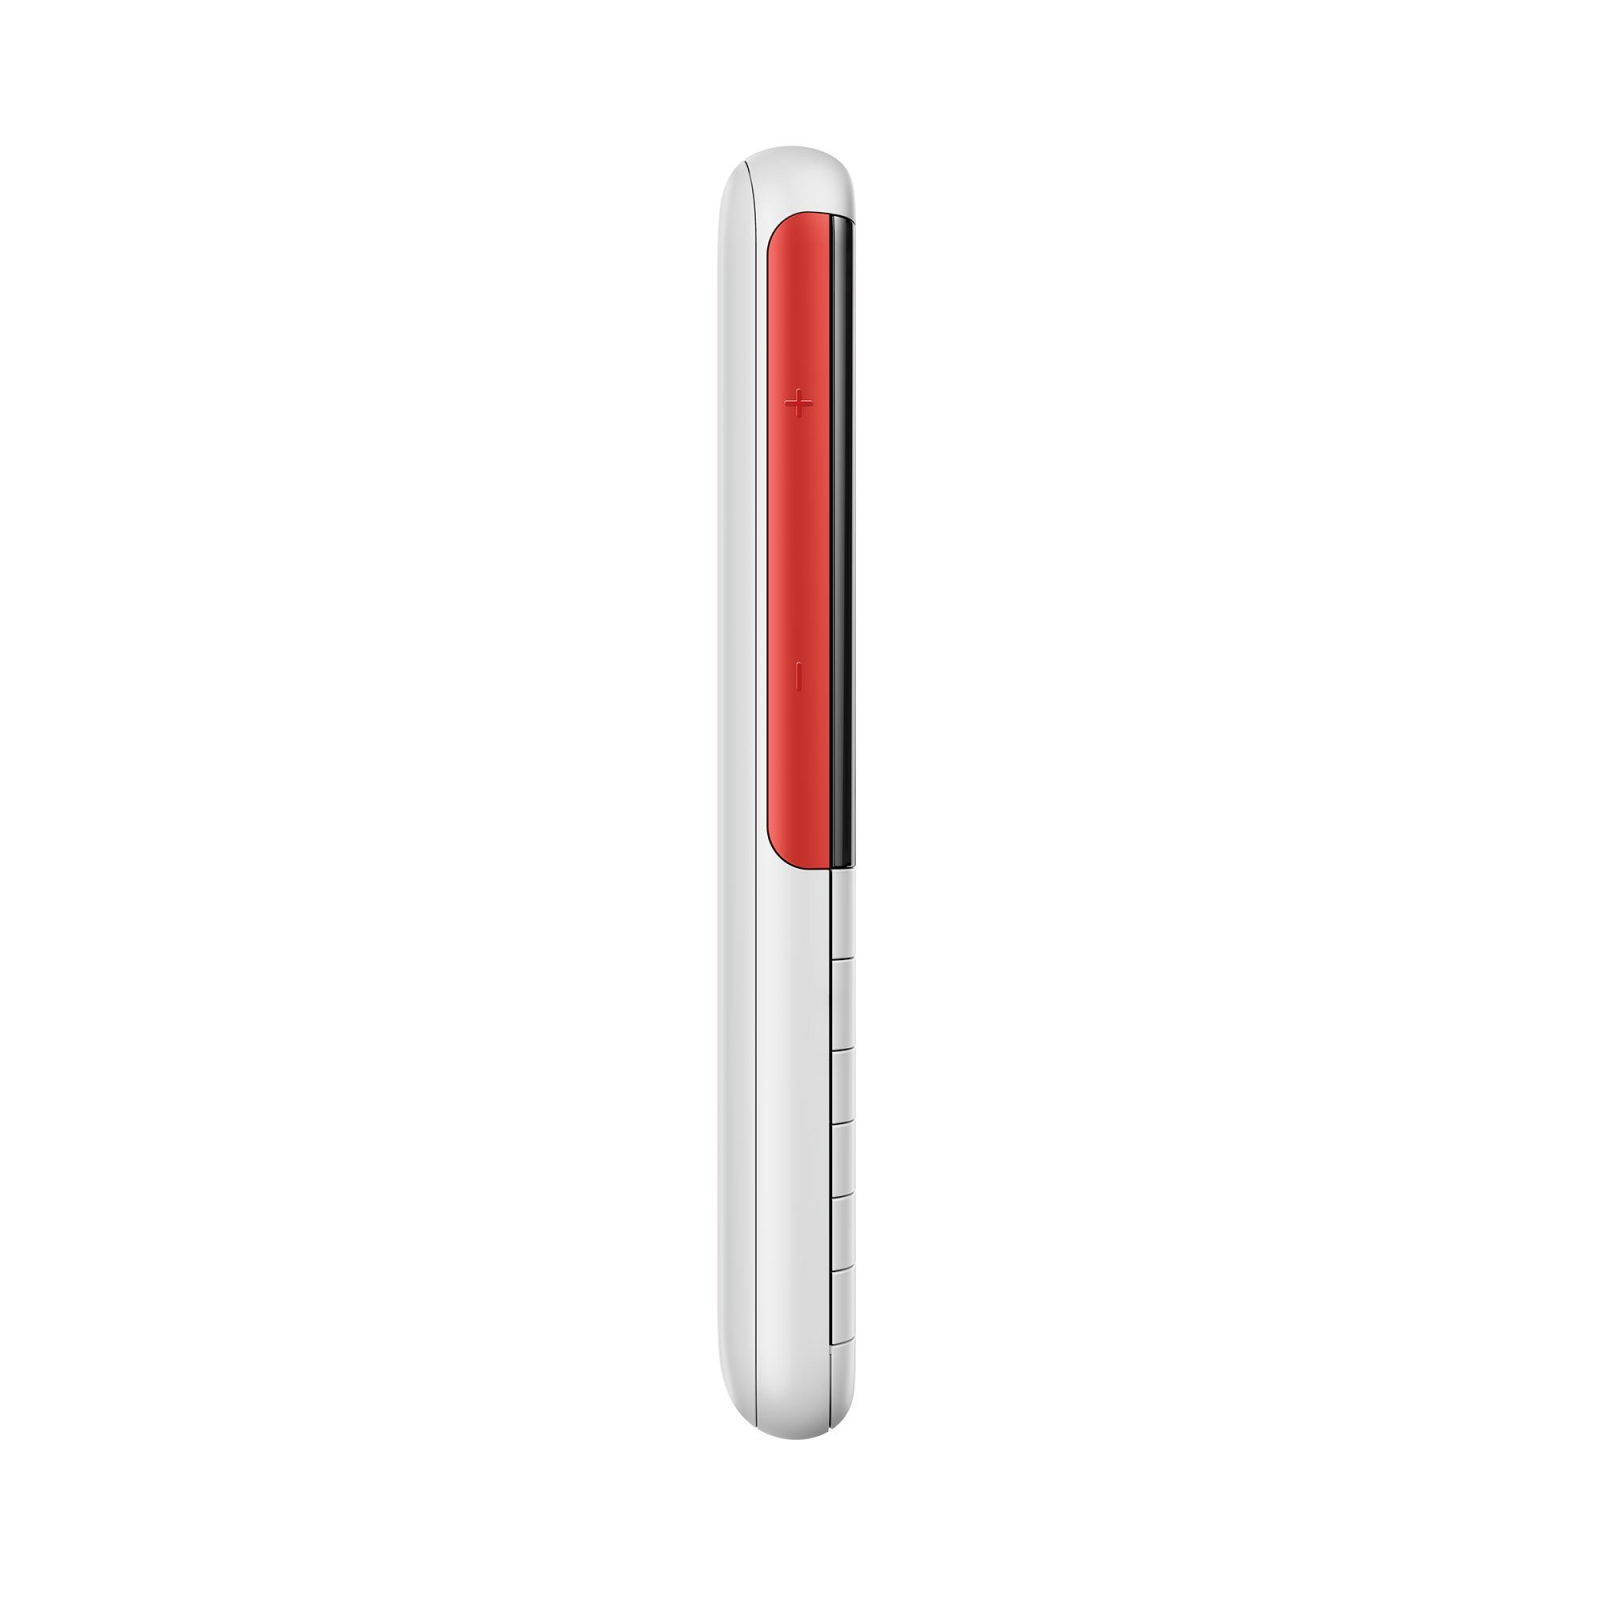 Мобільний телефон Nokia 5310 DS White-Red зображення 5